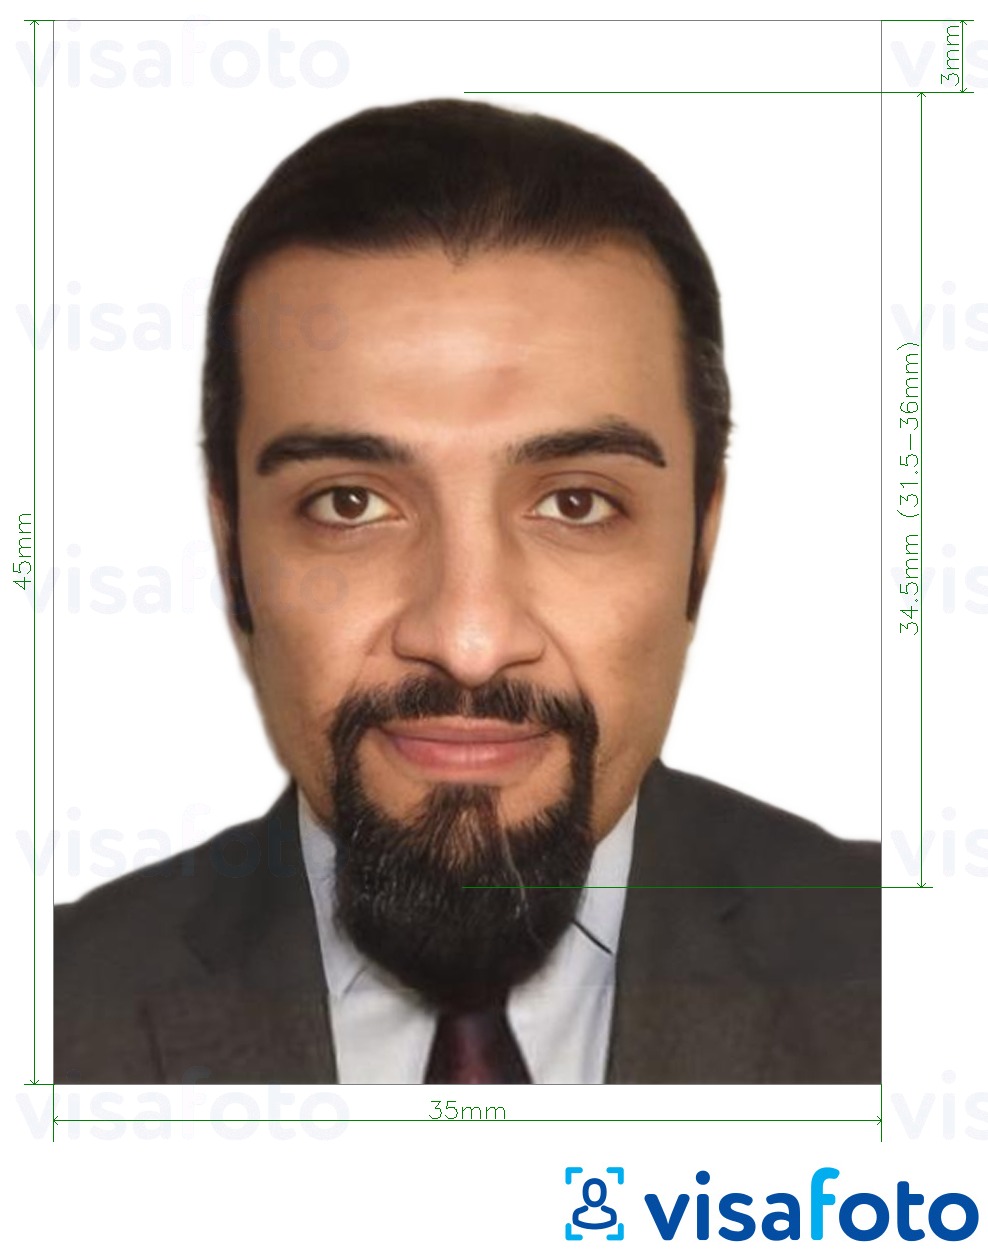 Nuotraukos pavyzdys Etiopija elektroninė viza internete 35x45 mm (3.5x4.5 cm) su tikslaus dydžio specifikacija